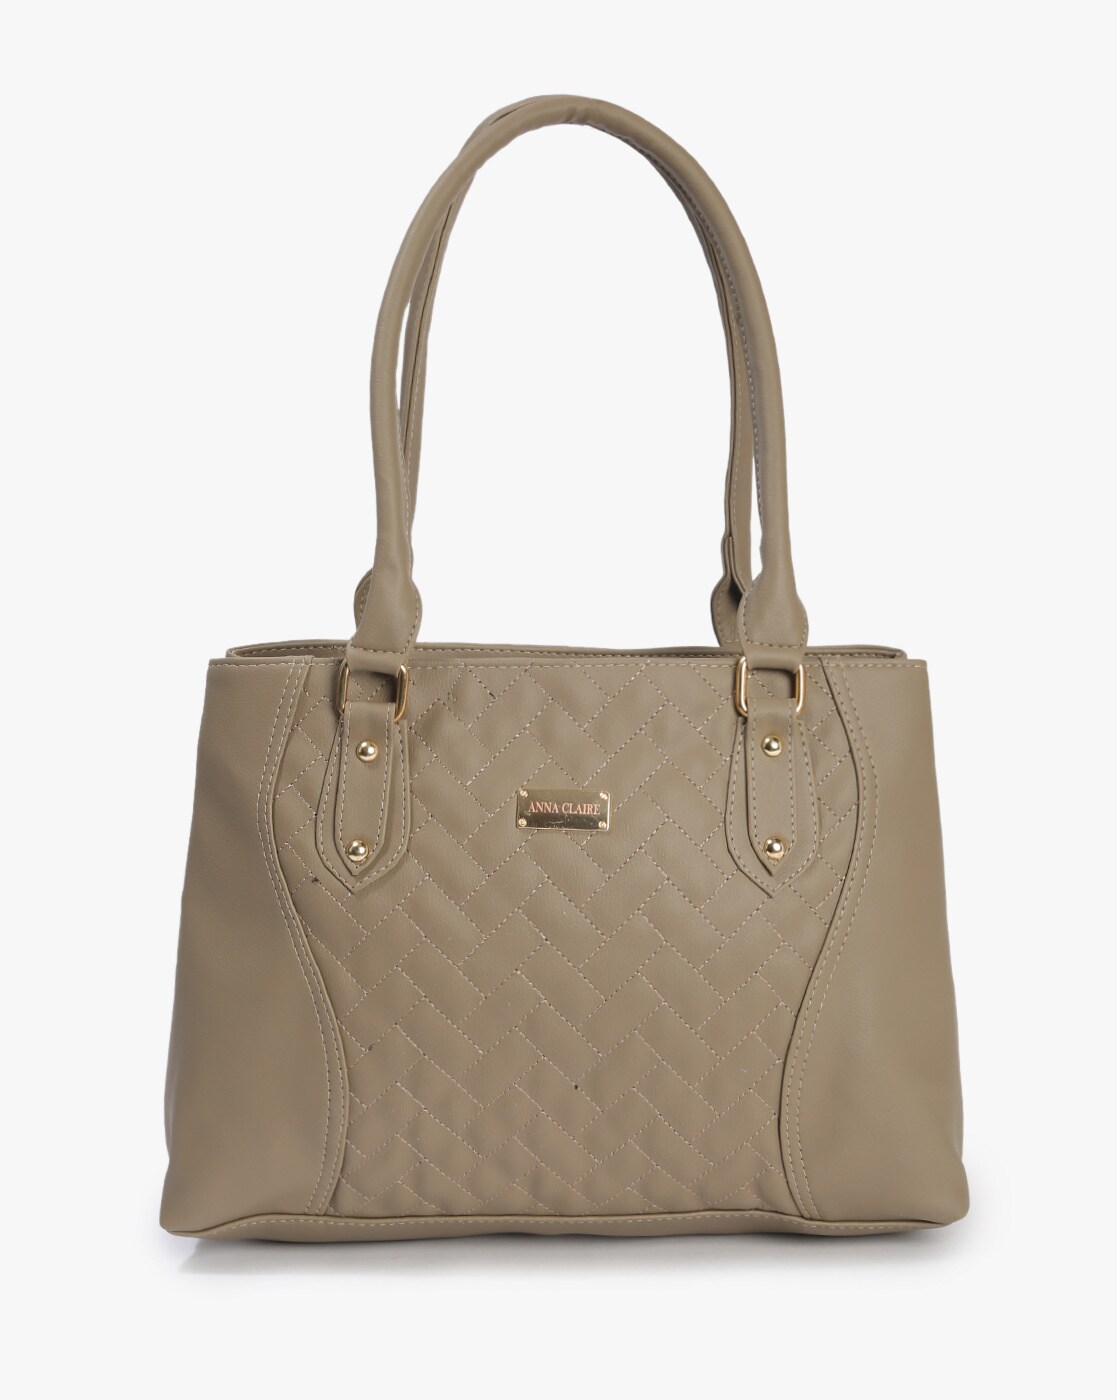 Ladies Premium Leather hand bag 99510 – SREELEATHERS